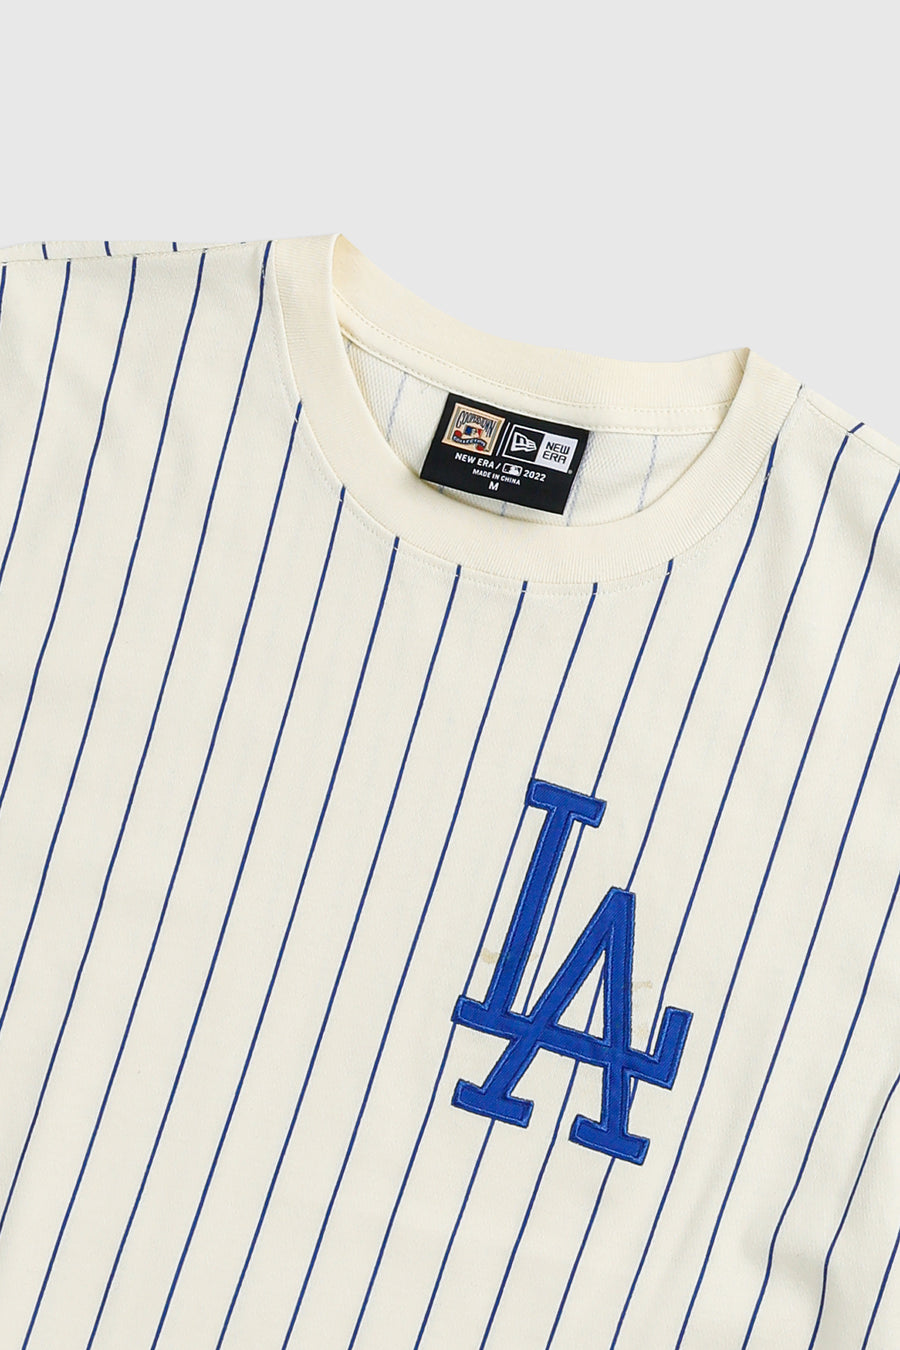 Vintage LA Dodgers MLB Tee - M